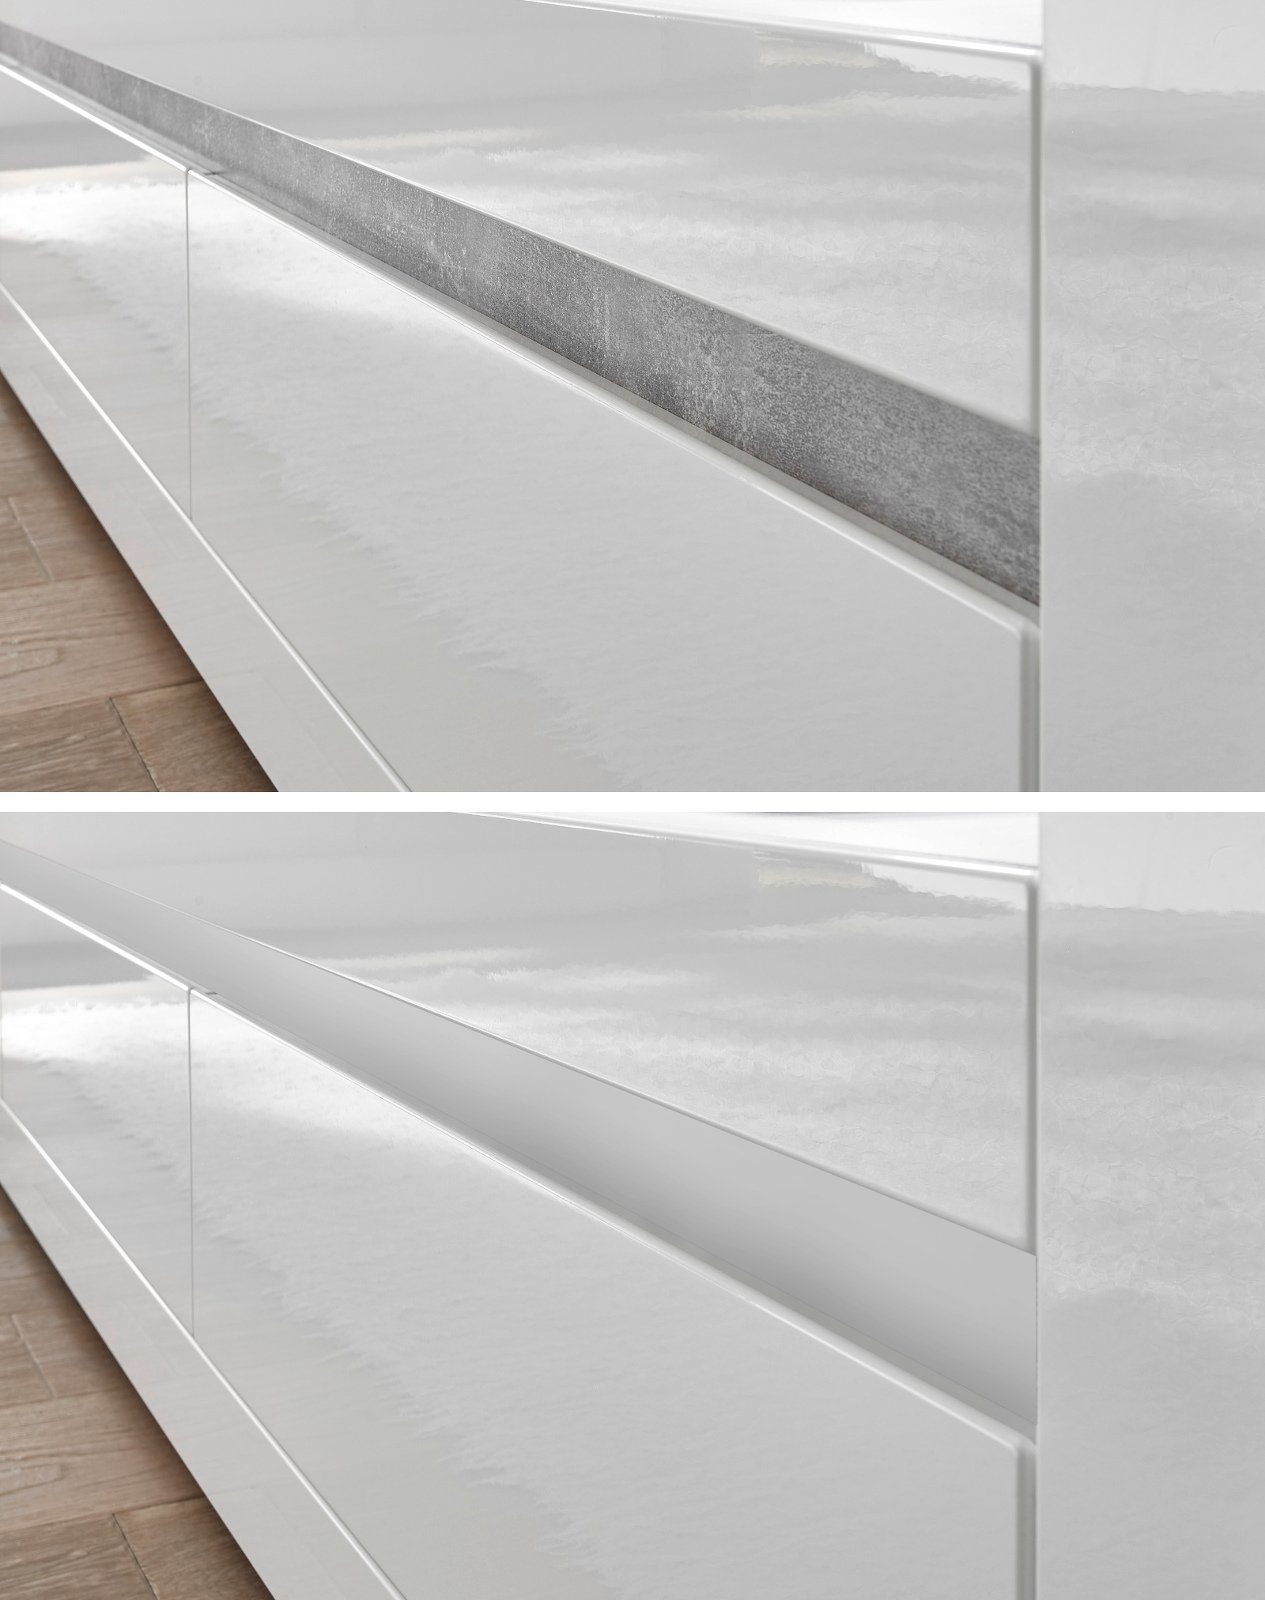 Furn.Design Wohnwand Nobile, Möbel-Set in mit Hochglanz, weiß), 4-teilig (Wohn- und Soft-Close Esszimmer